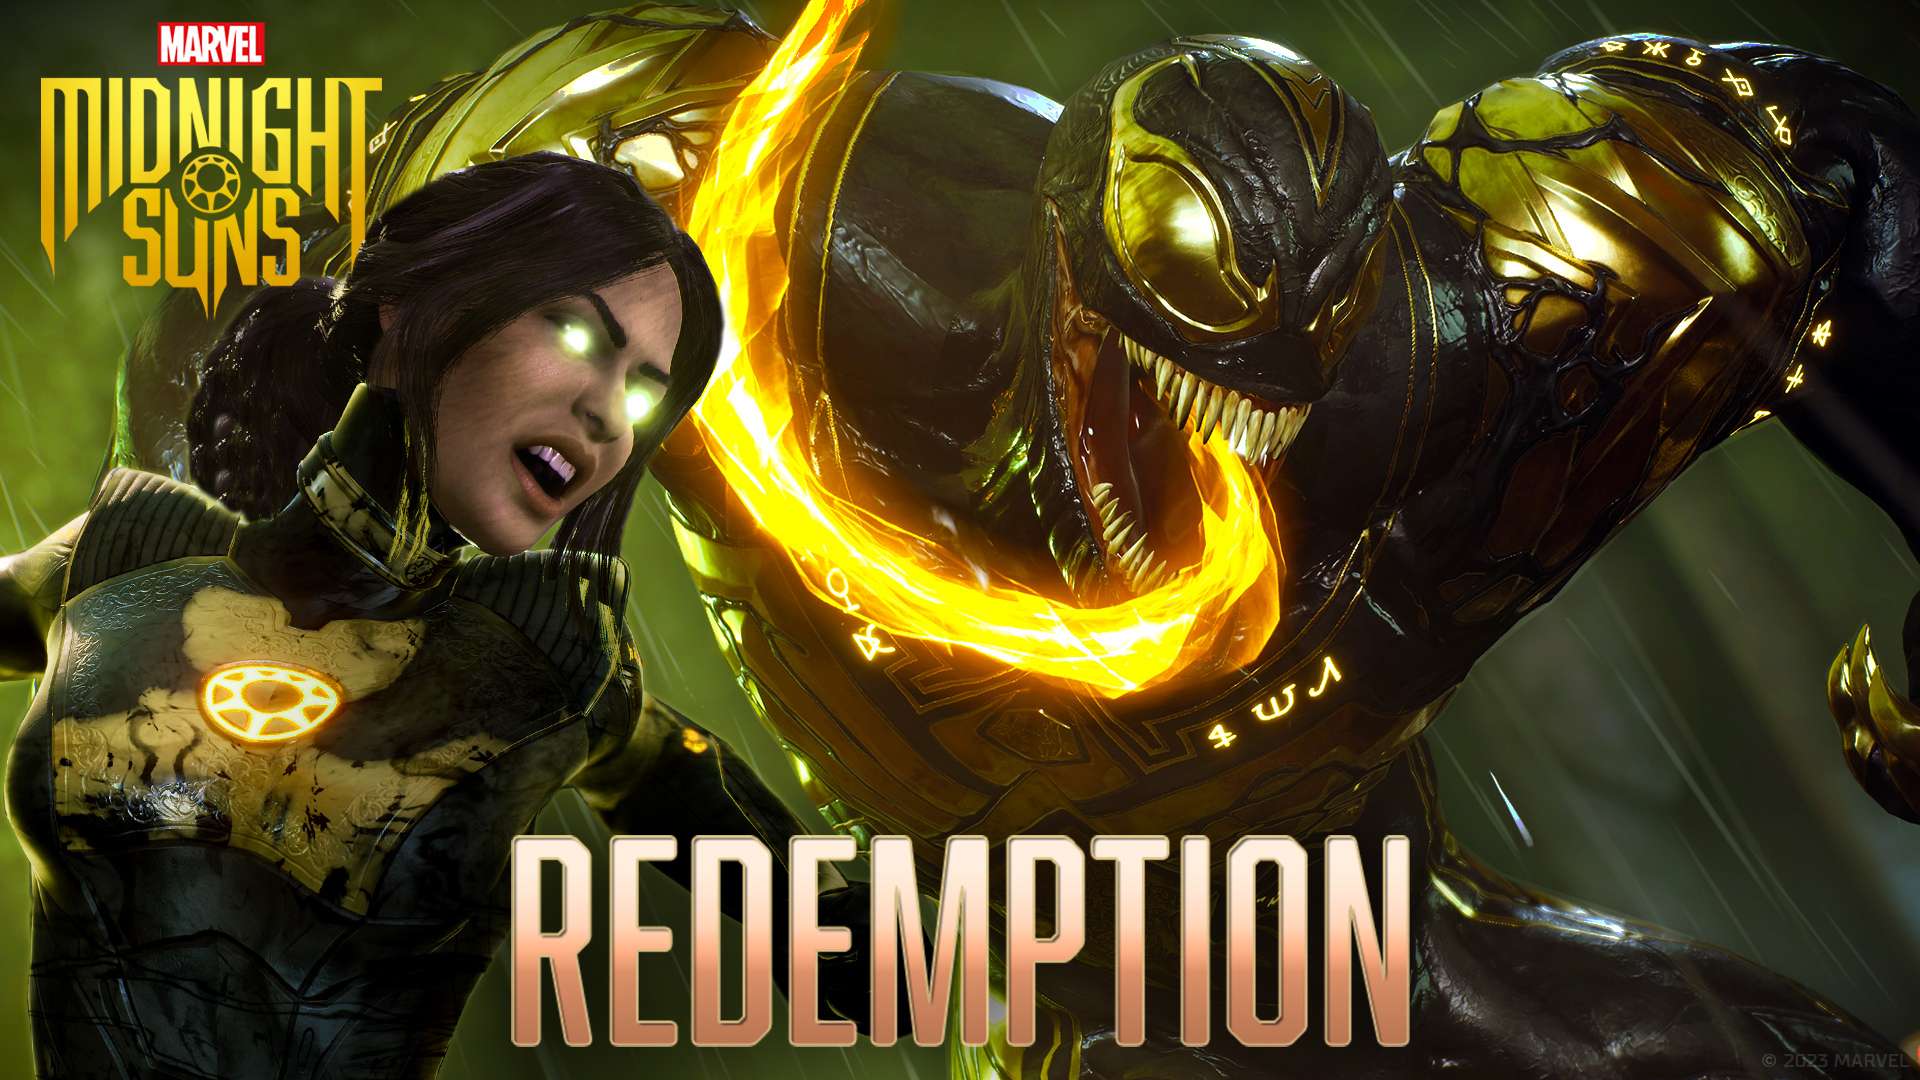 Redemption - Venom DLC Trailer | Marvel